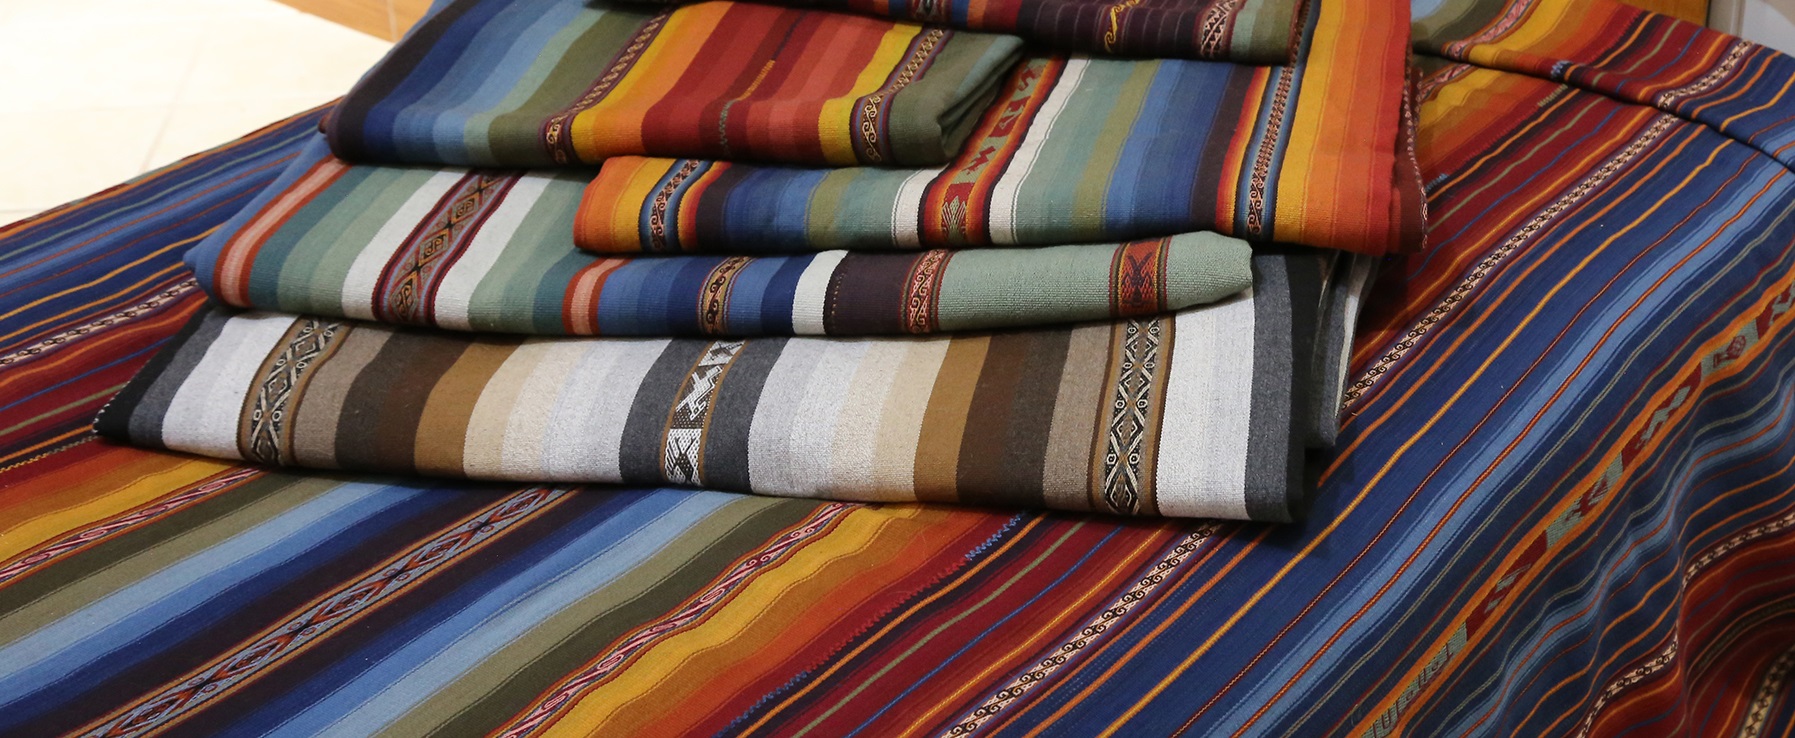 Colchas – large textiles